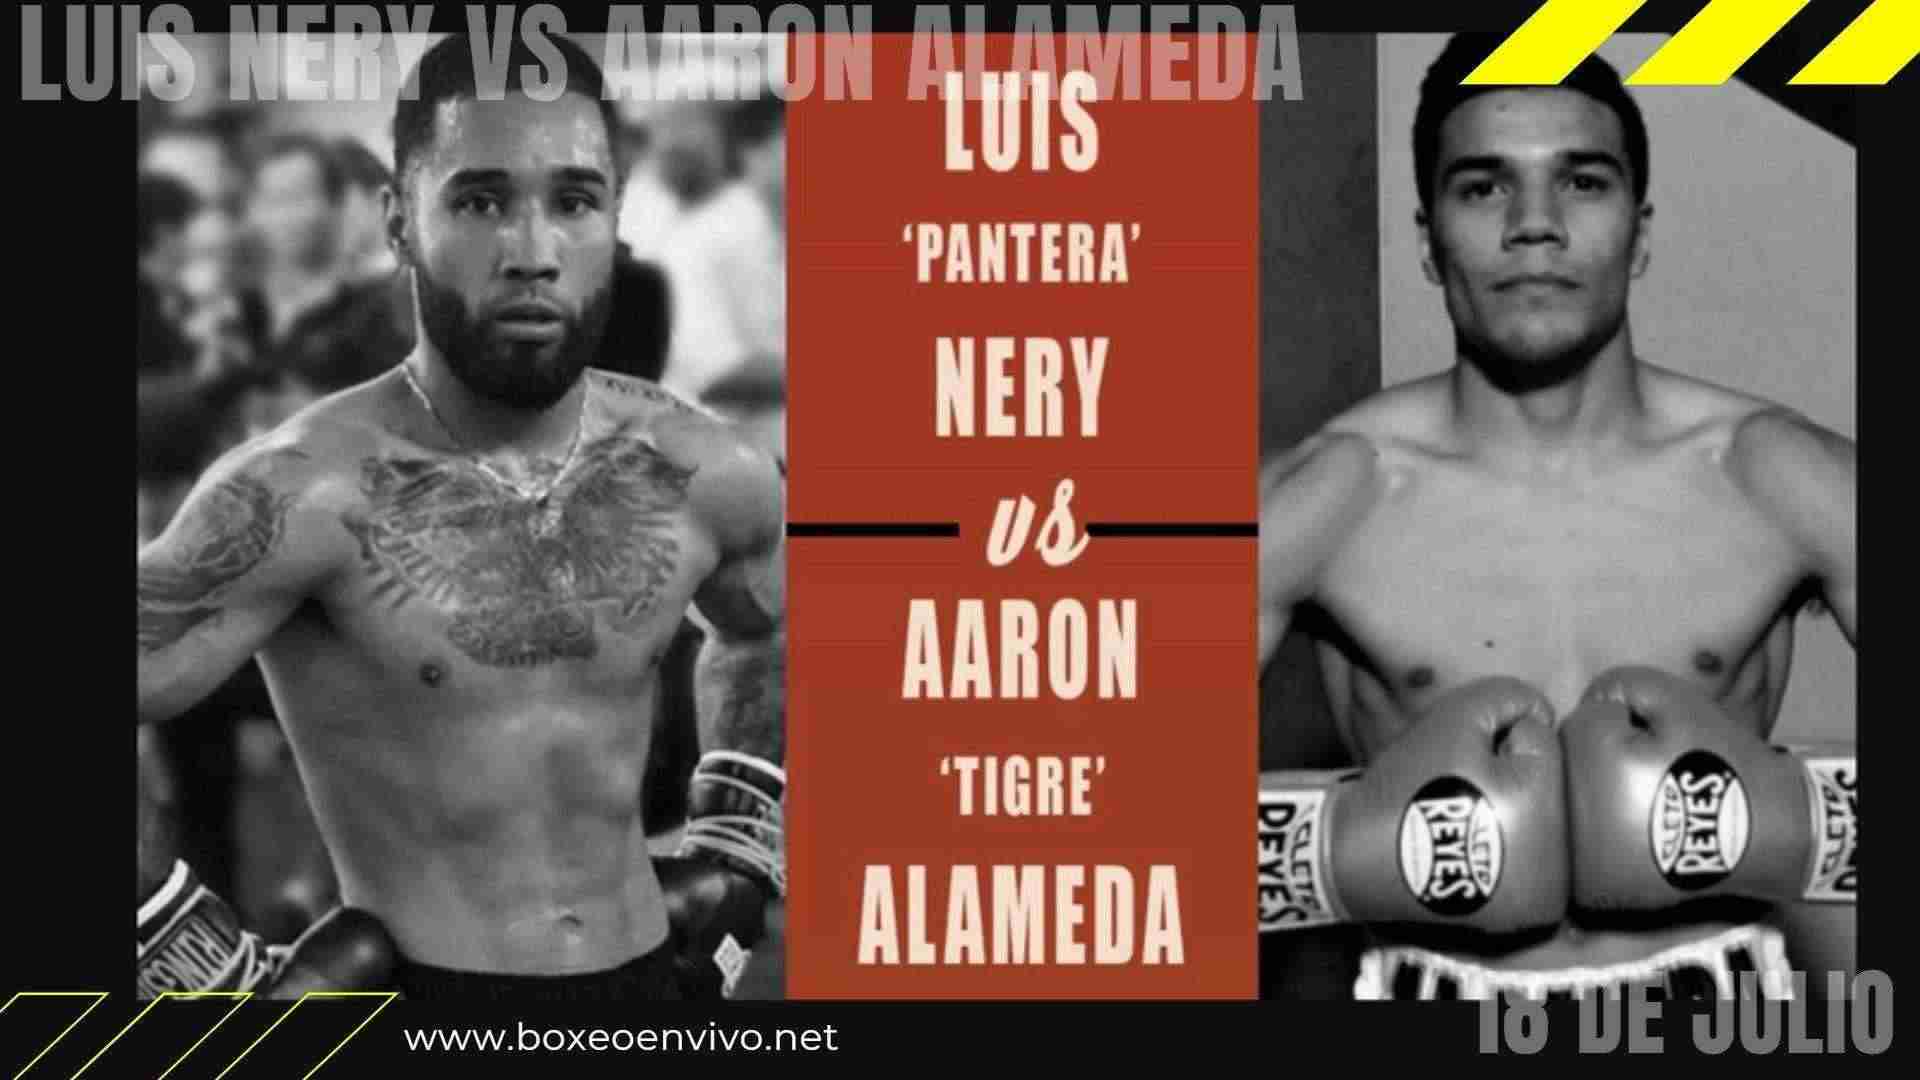 Luis Nery vs Aaron Alameda